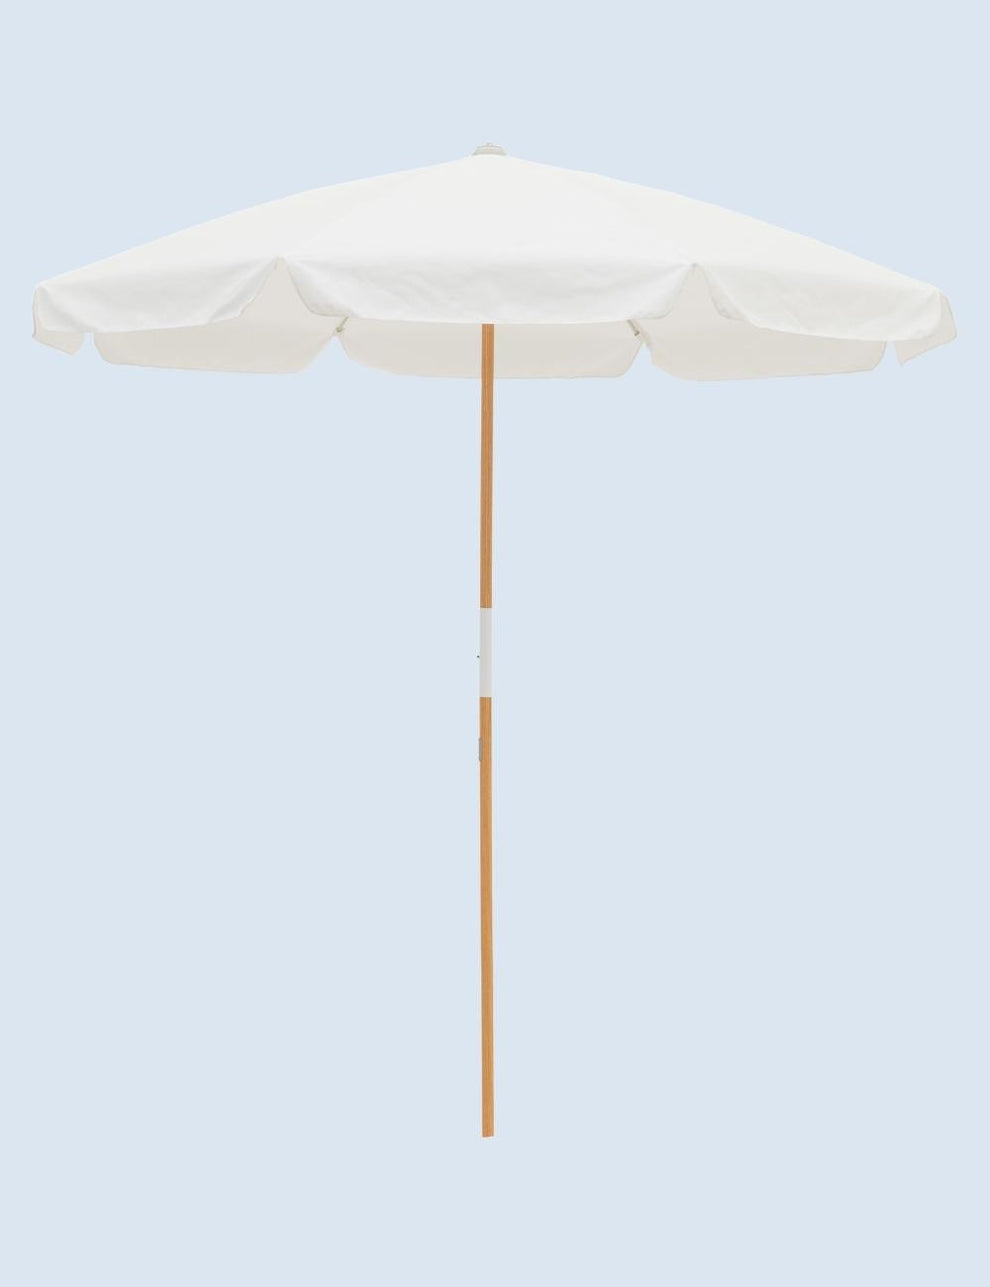 Antique White Parasol Umbrella